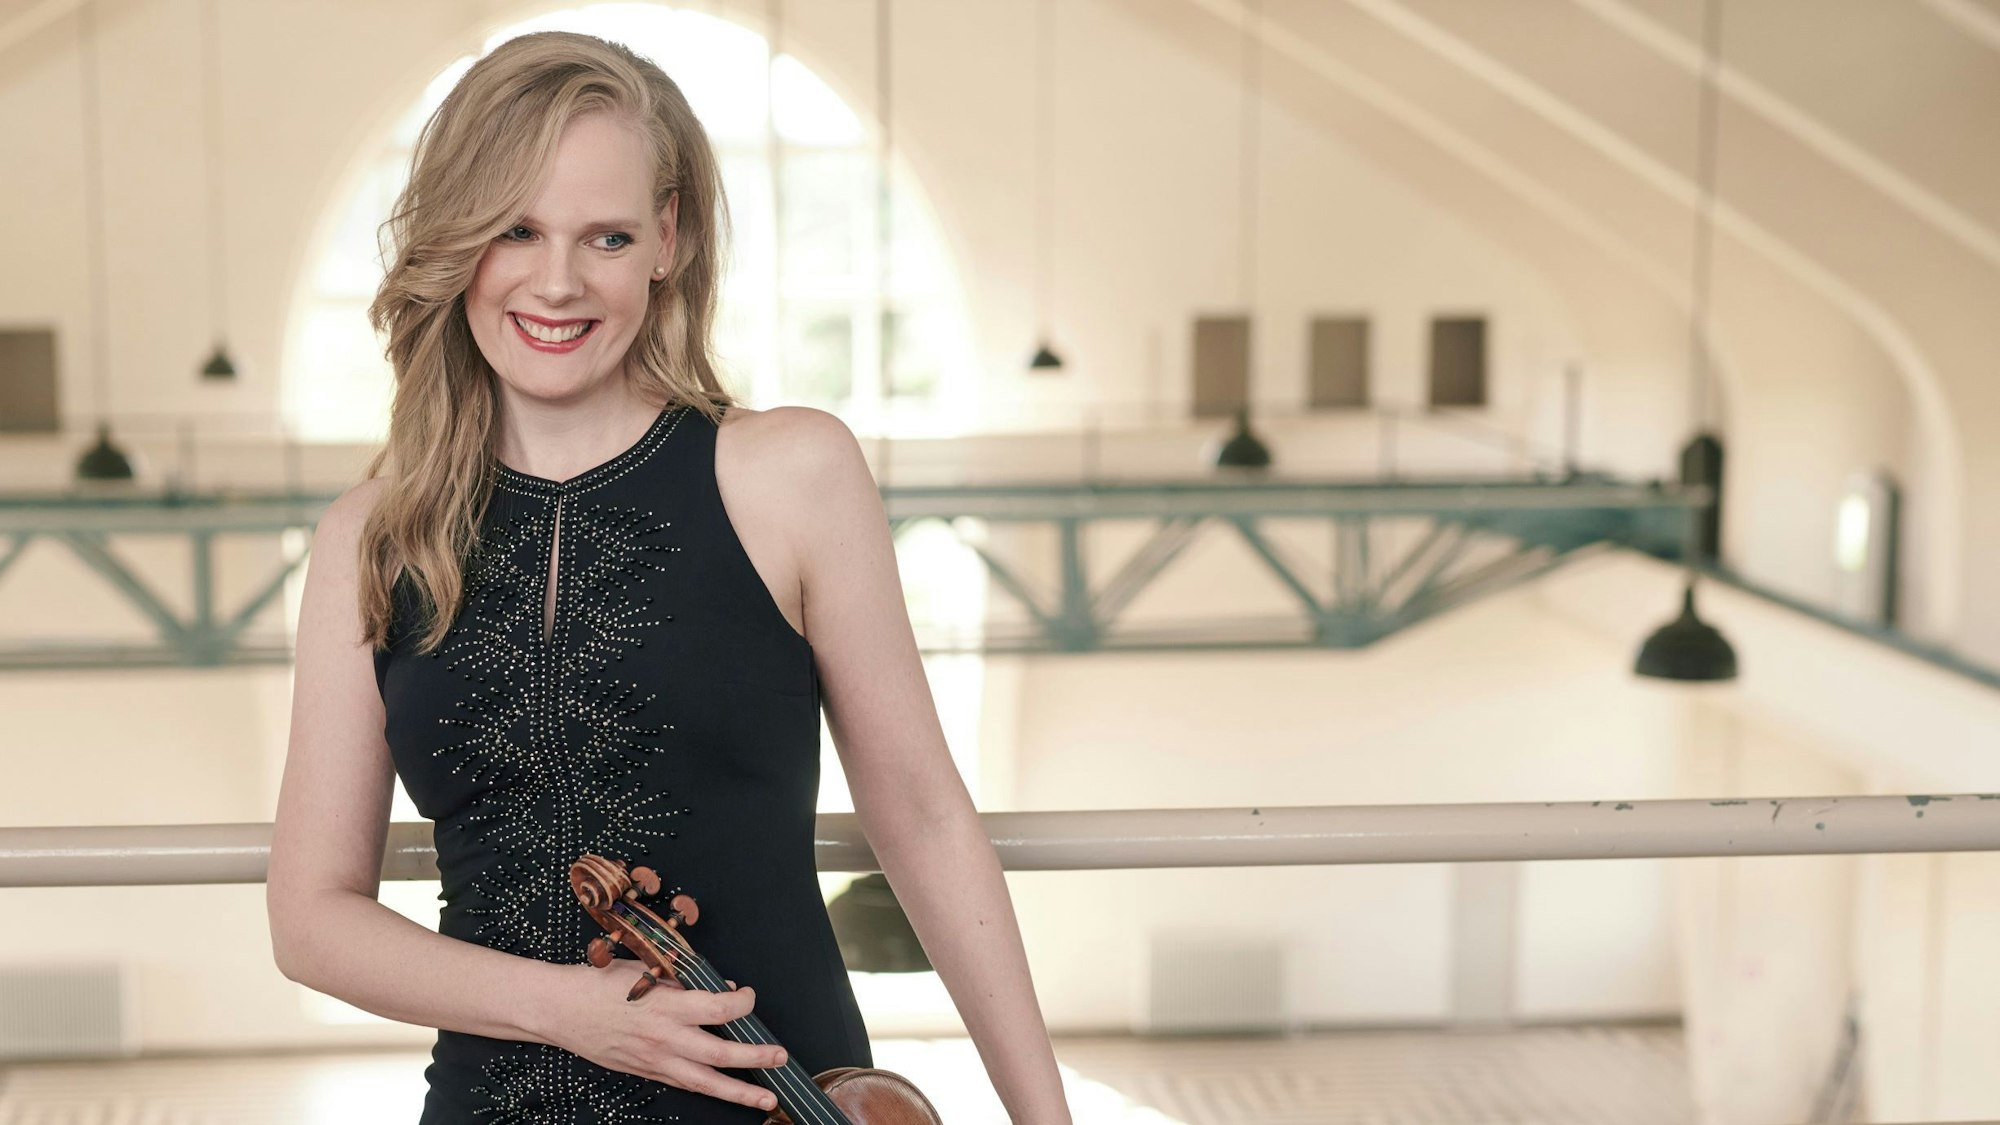 Simone Lamsma steht mit Geige in einer leeren Halle.